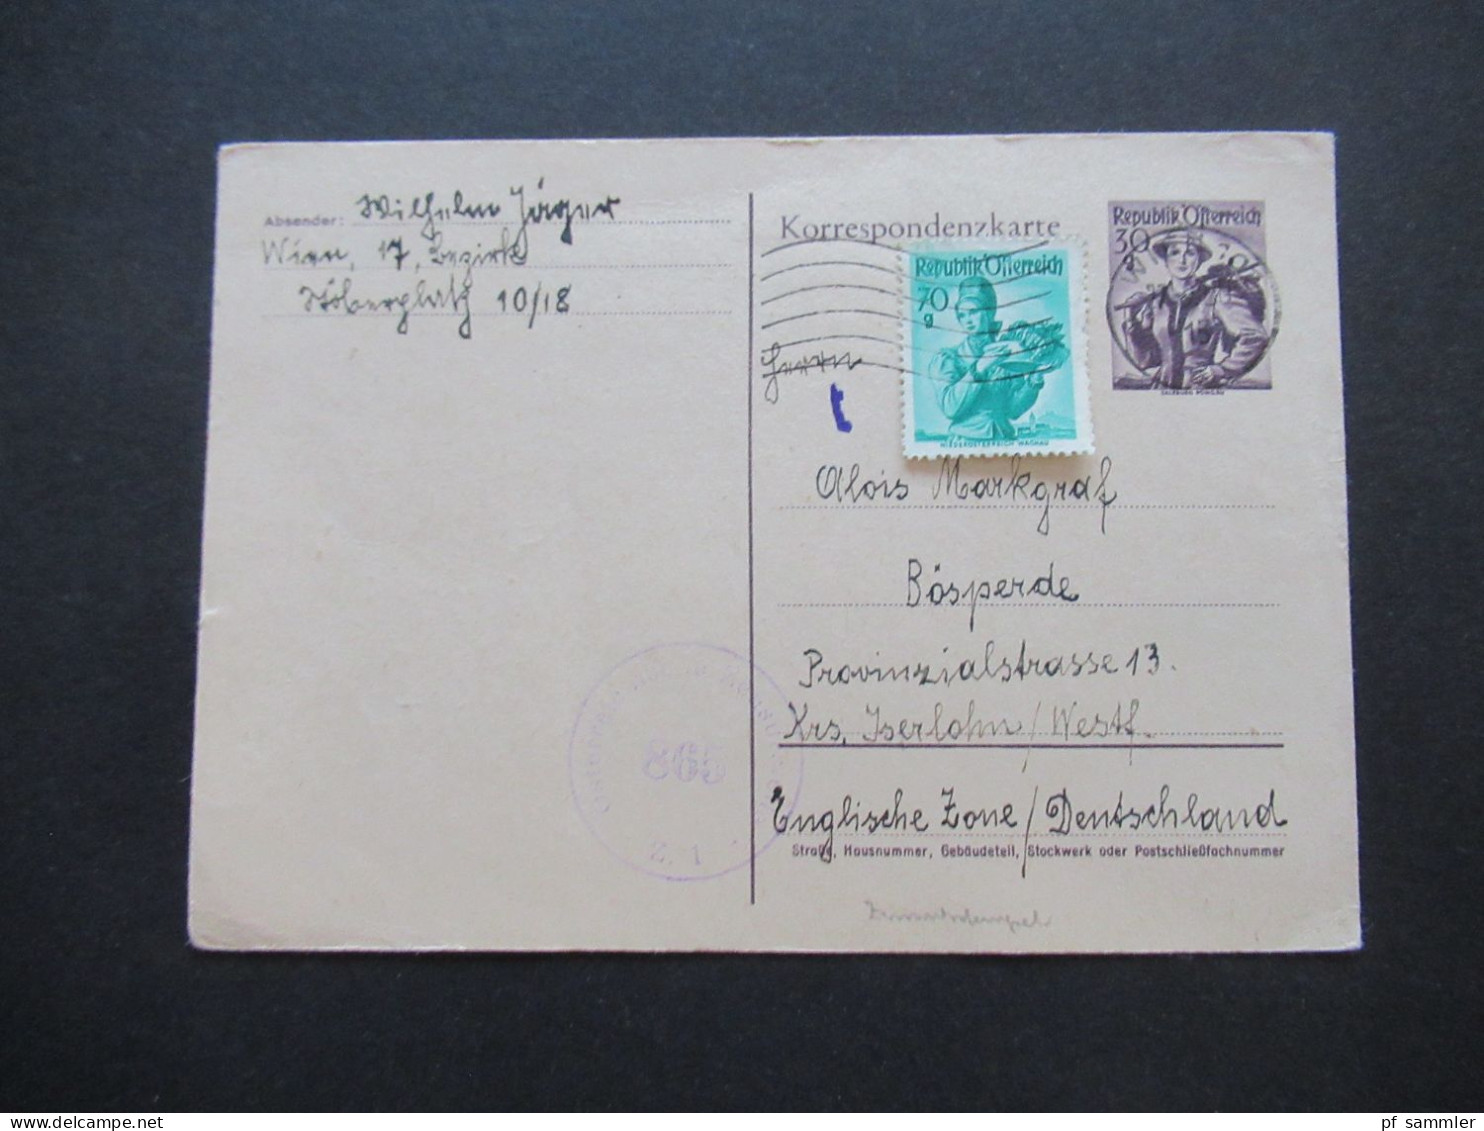 Österreich 1950 Auslands Postkarte Ganzsache P 332 Mit Zusatzfrankatur Und Zensurstempel Oesterreichische Zensurstelle Z - Postkarten